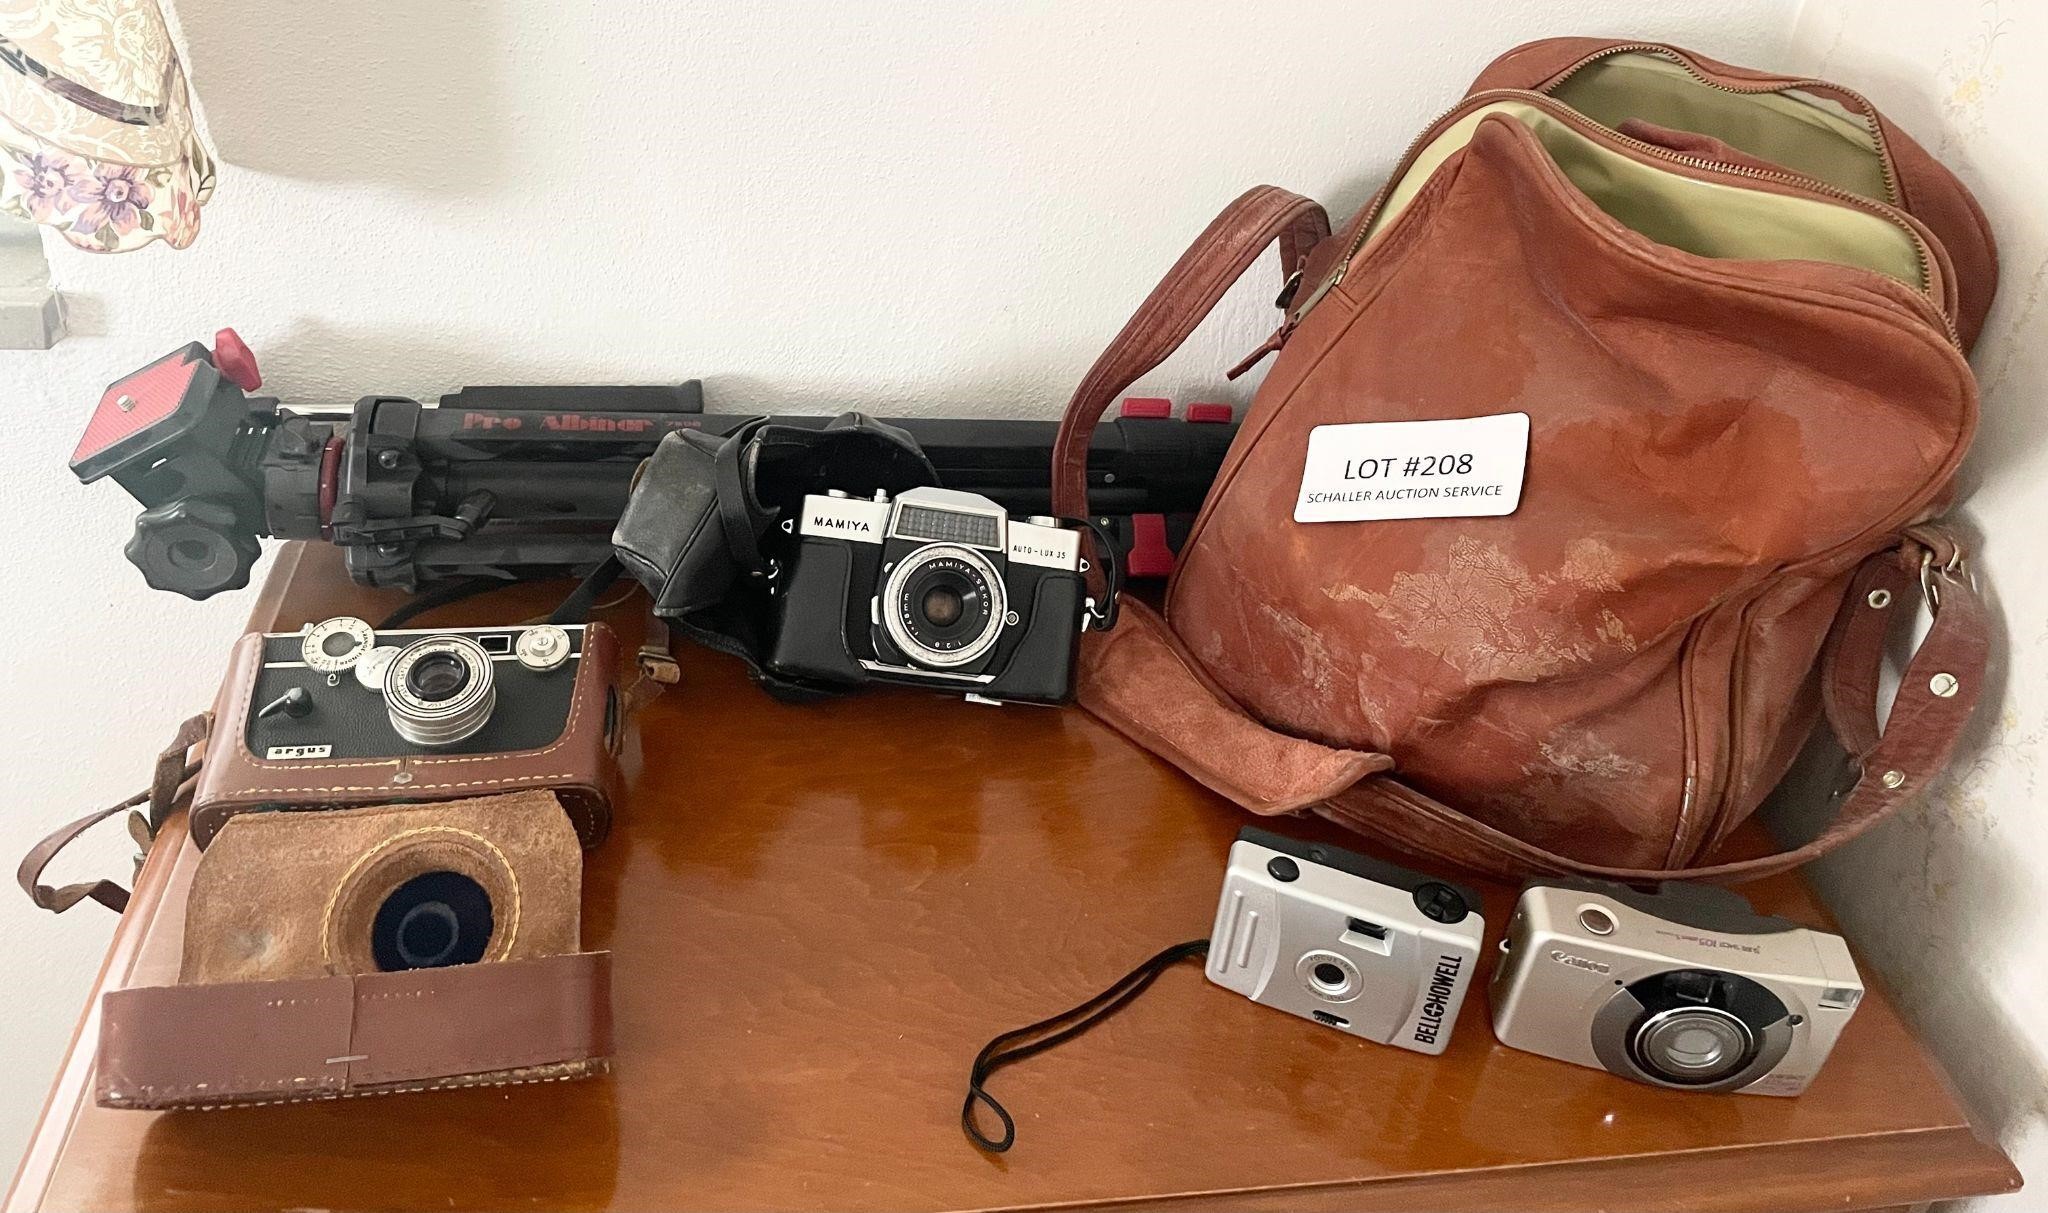 4 cameras, tripod, camera bag